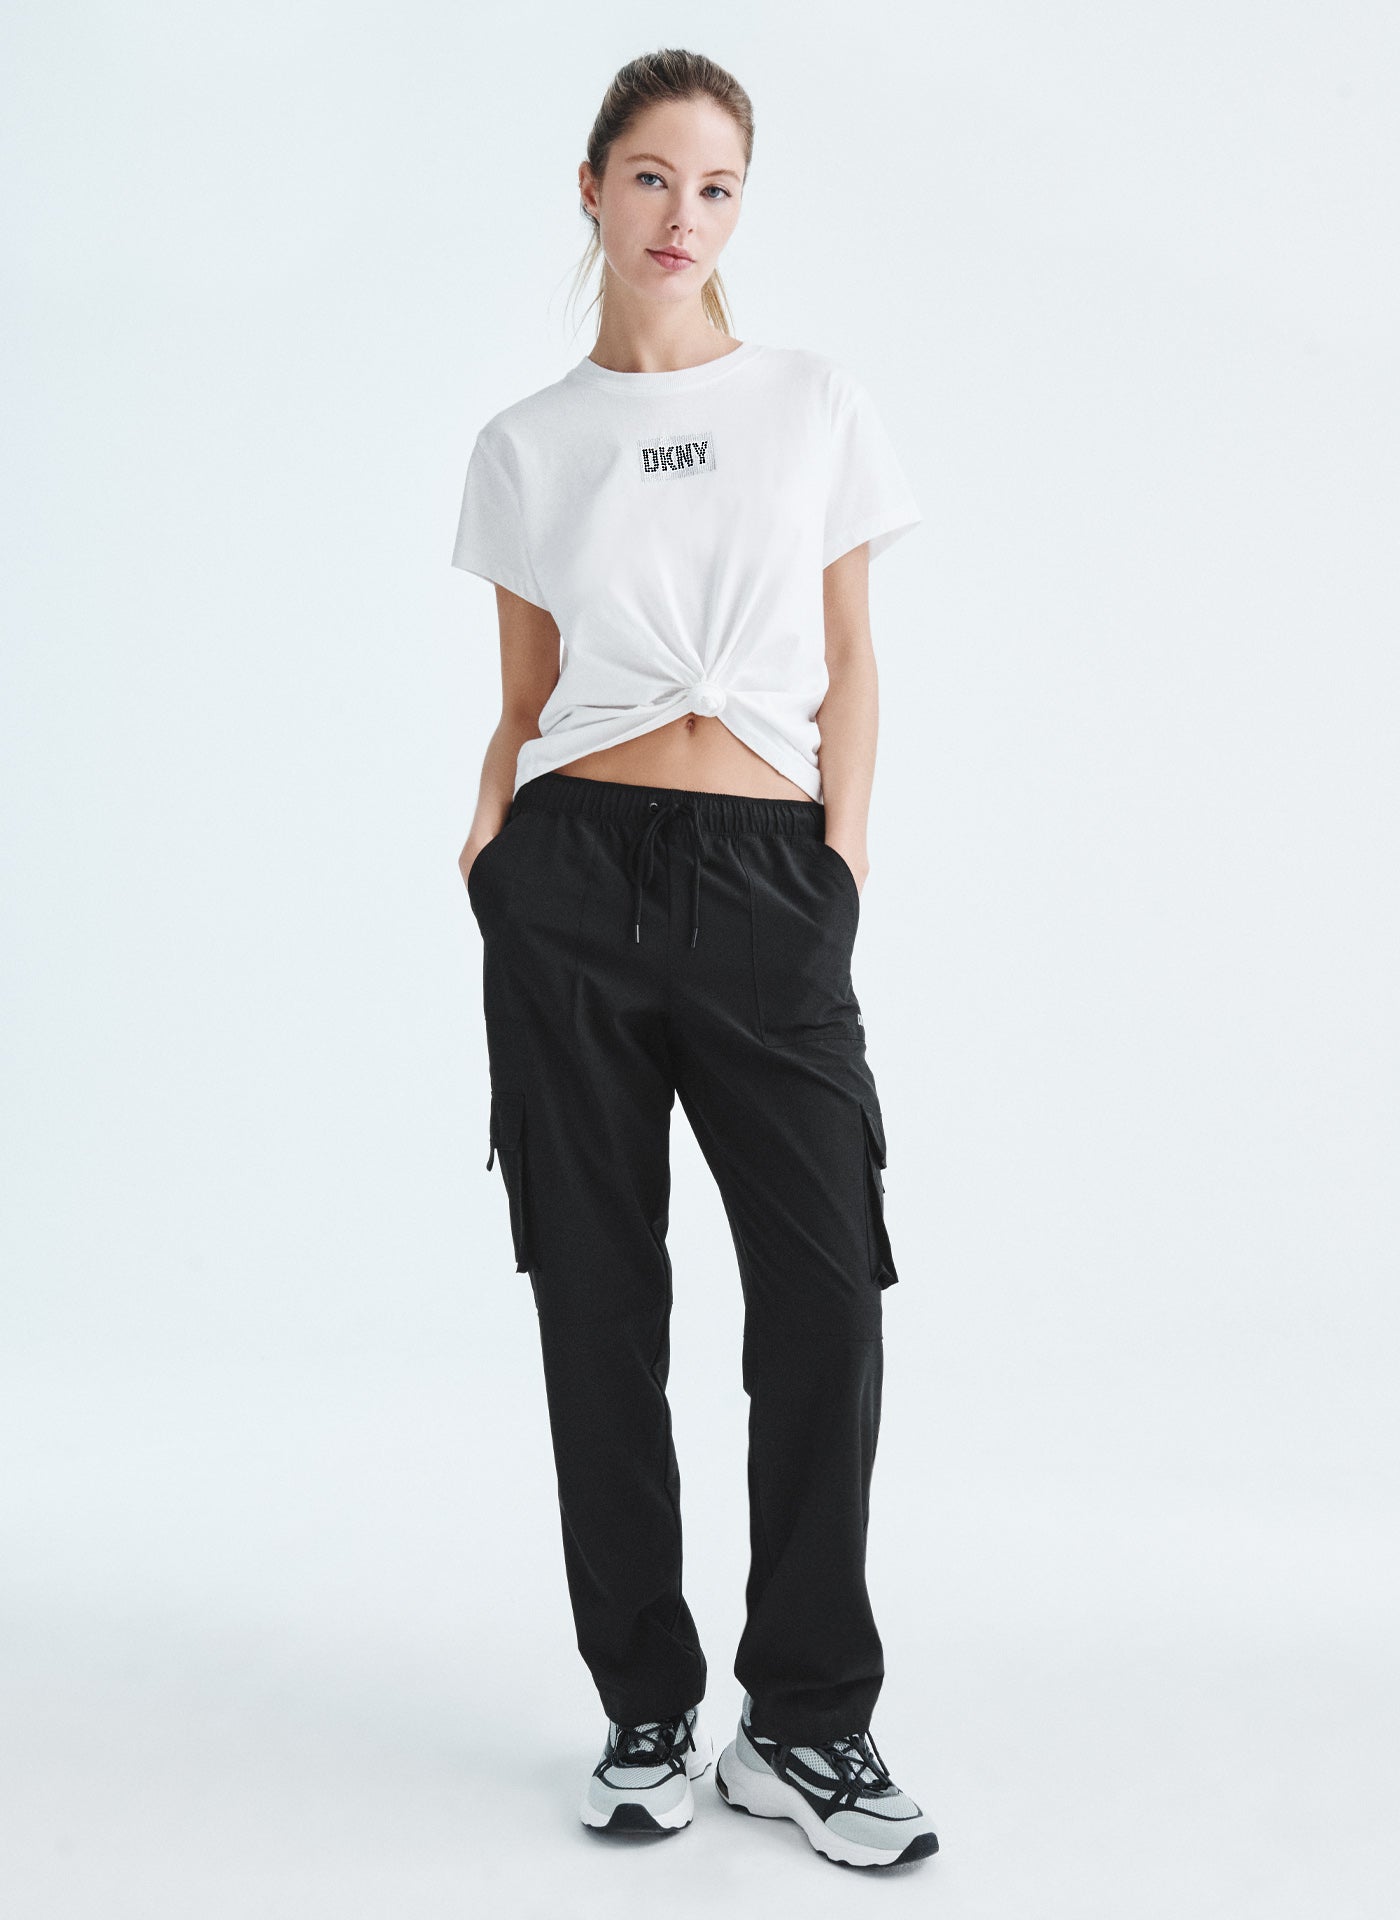 DKNY Jeans Ladies' Ponte Pant Black Mid Rise XL 12/14 NWT – IBBY